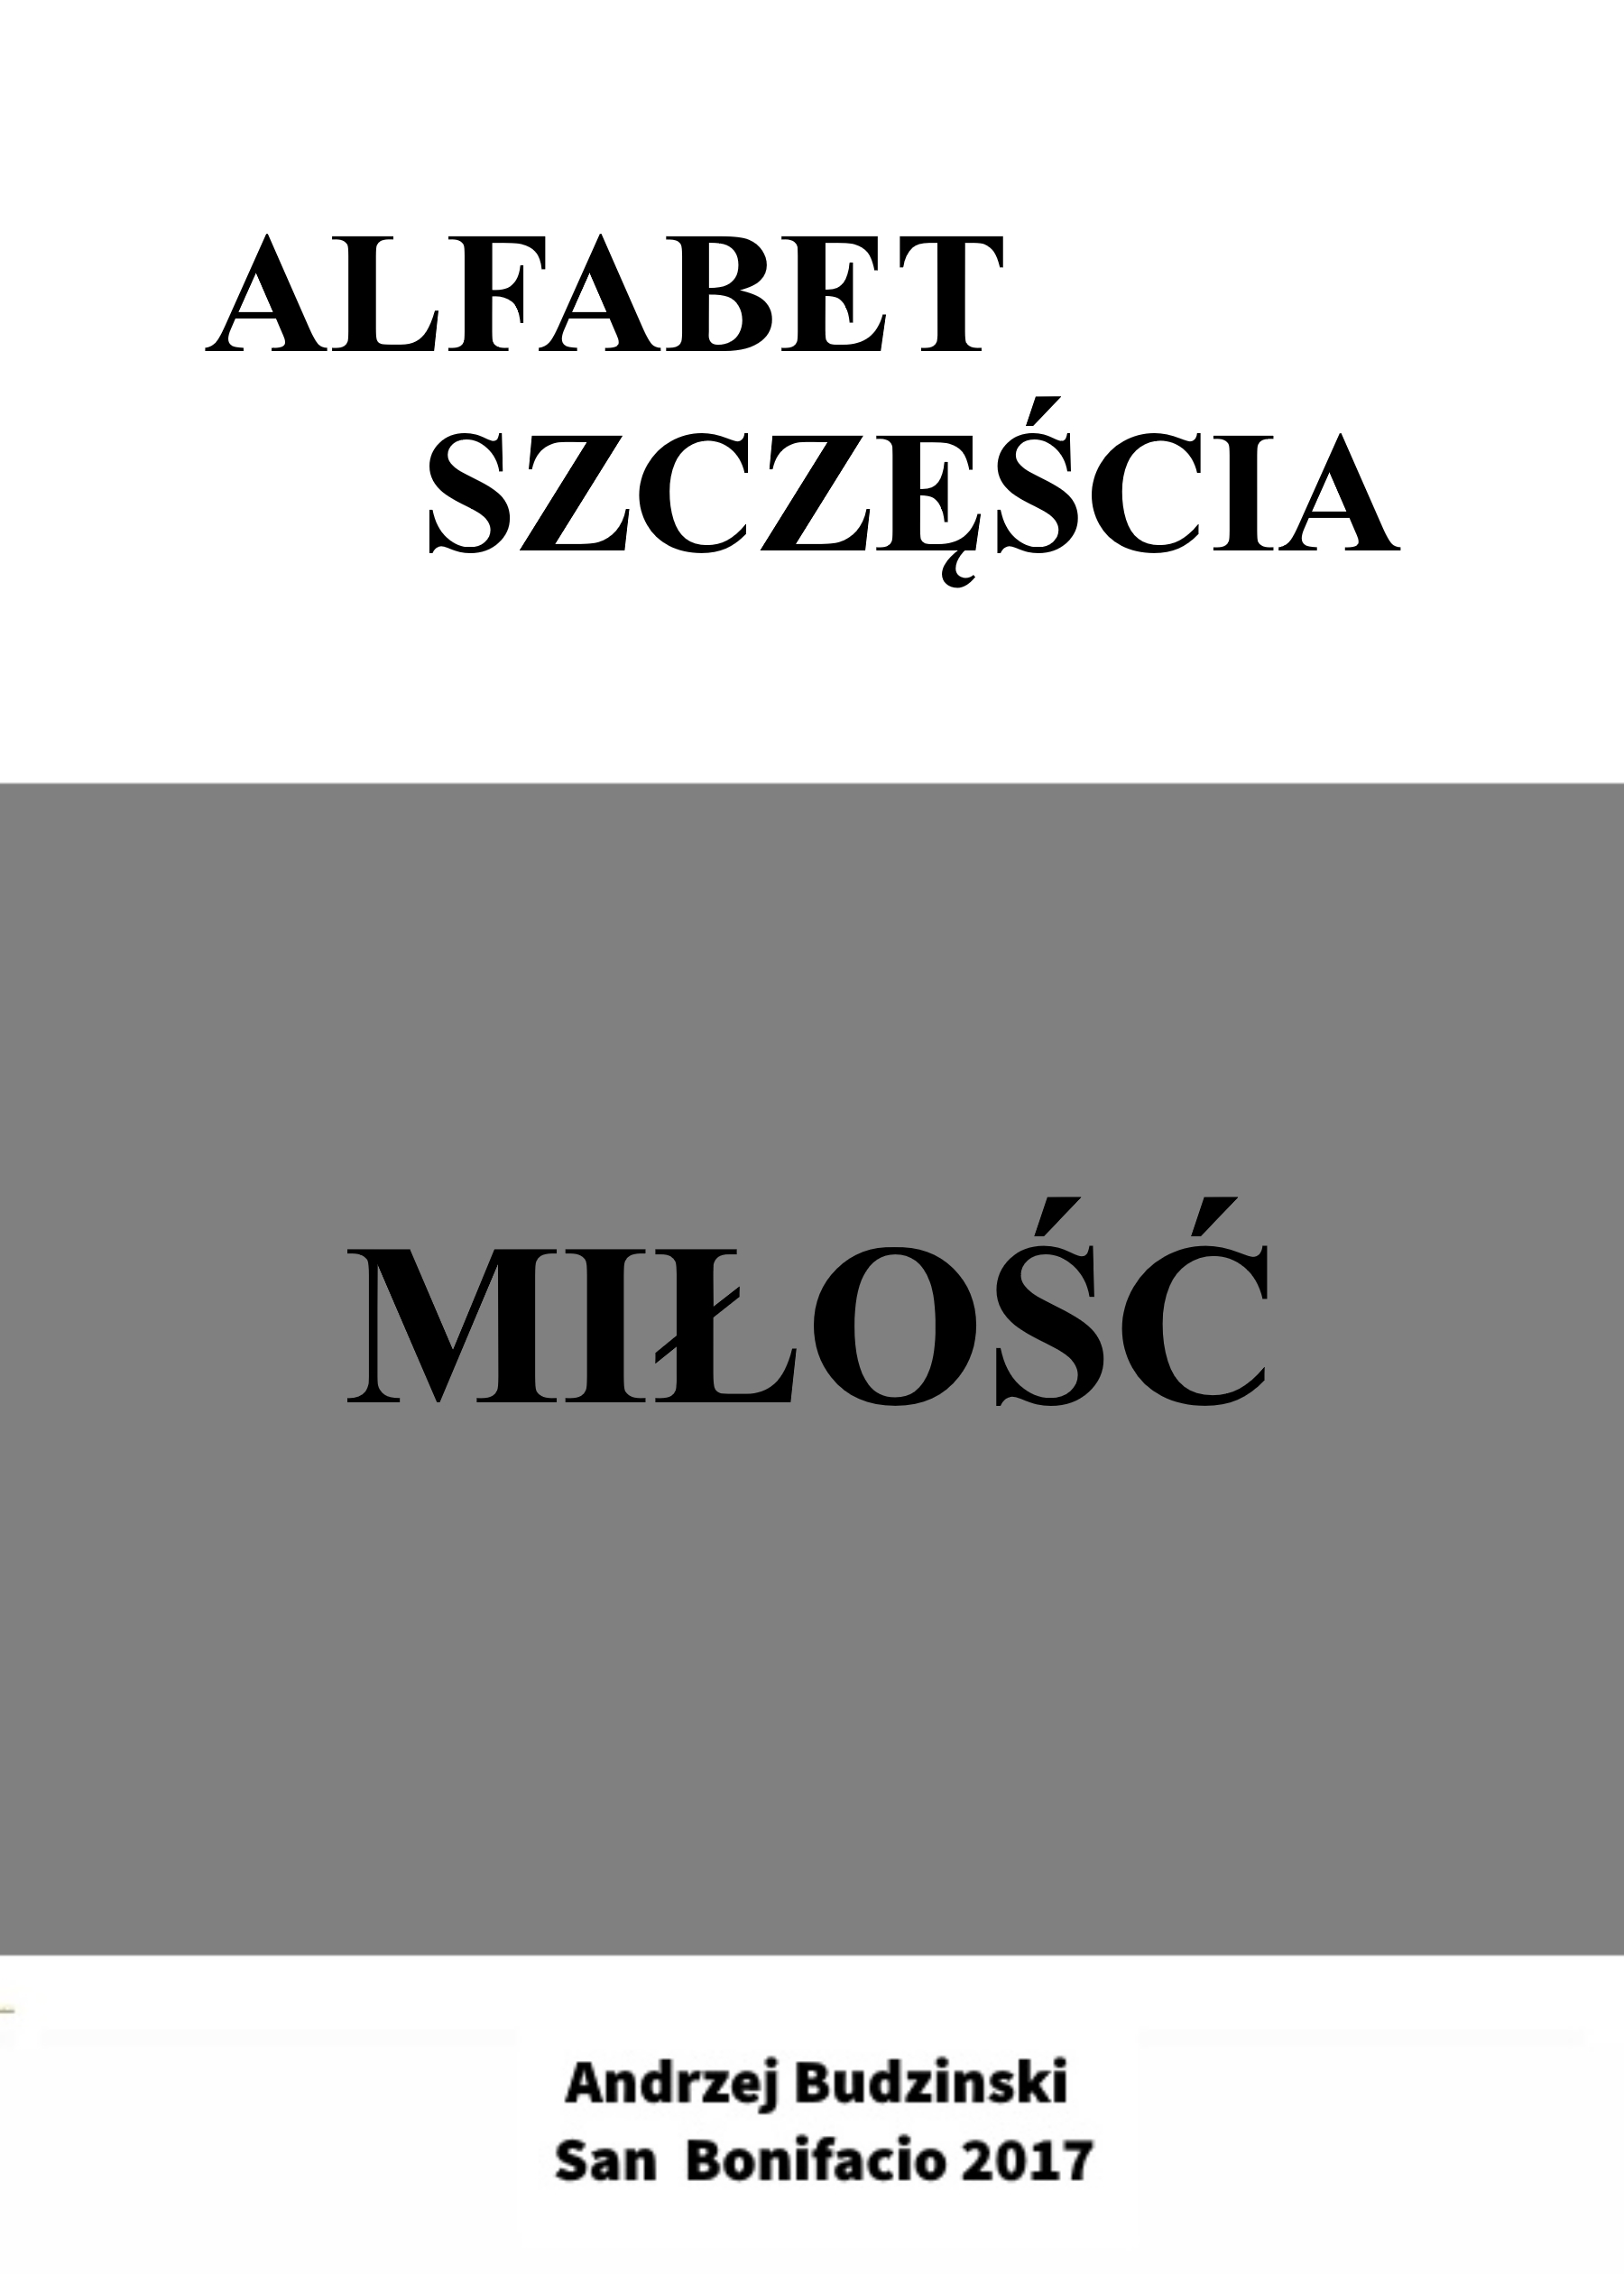 Книга Alfabet Szczęścia из серии , созданная Andrzej Stanislaw Budzinski, может относится к жанру Личностный рост. Стоимость электронной книги Alfabet Szczęścia с идентификатором 40851277 составляет 363.29 руб.